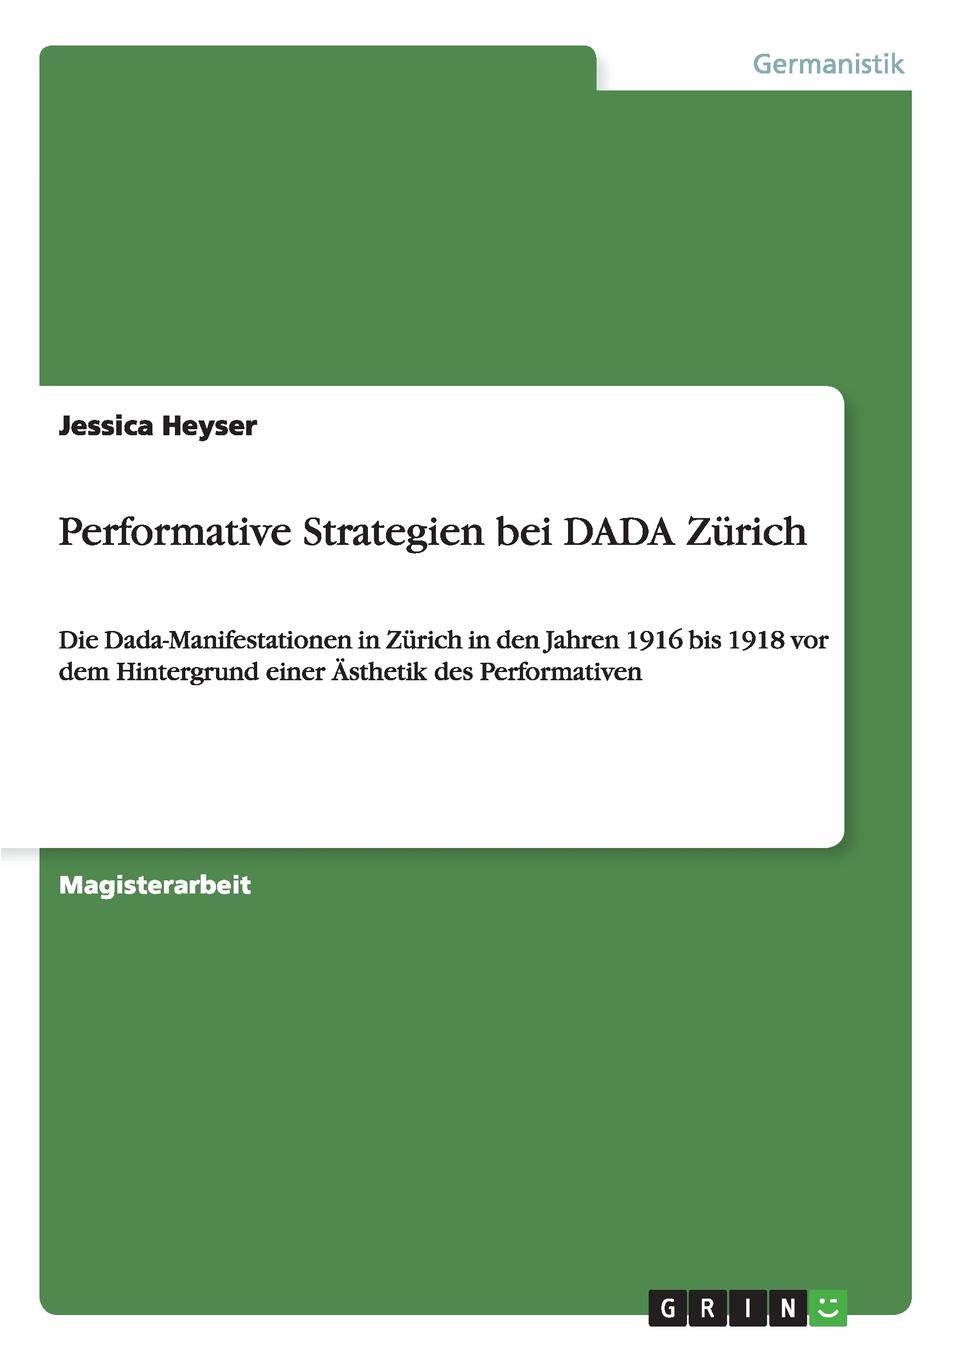 Performative Strategien bei DADA Zurich